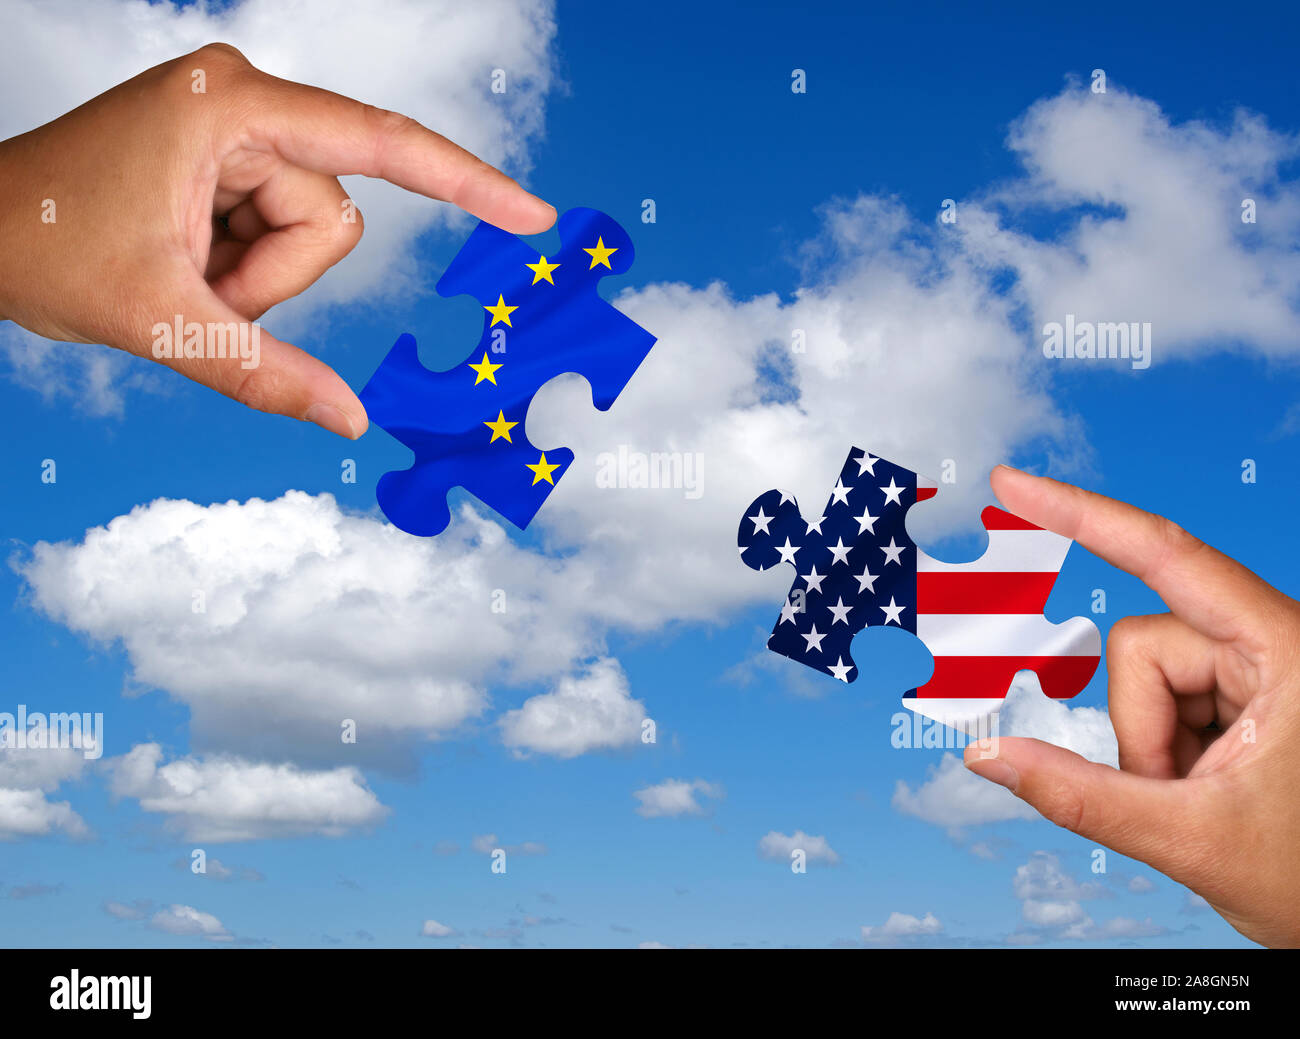 Zwei Hände halten jeweils ein Puzzle Teil, Silhouette, Konfrontation, Annäherung, Krieg, Handelskrieg, Wirtschaftskrieg, Atomvertrag, Grossmächte, Eur Stock Photo